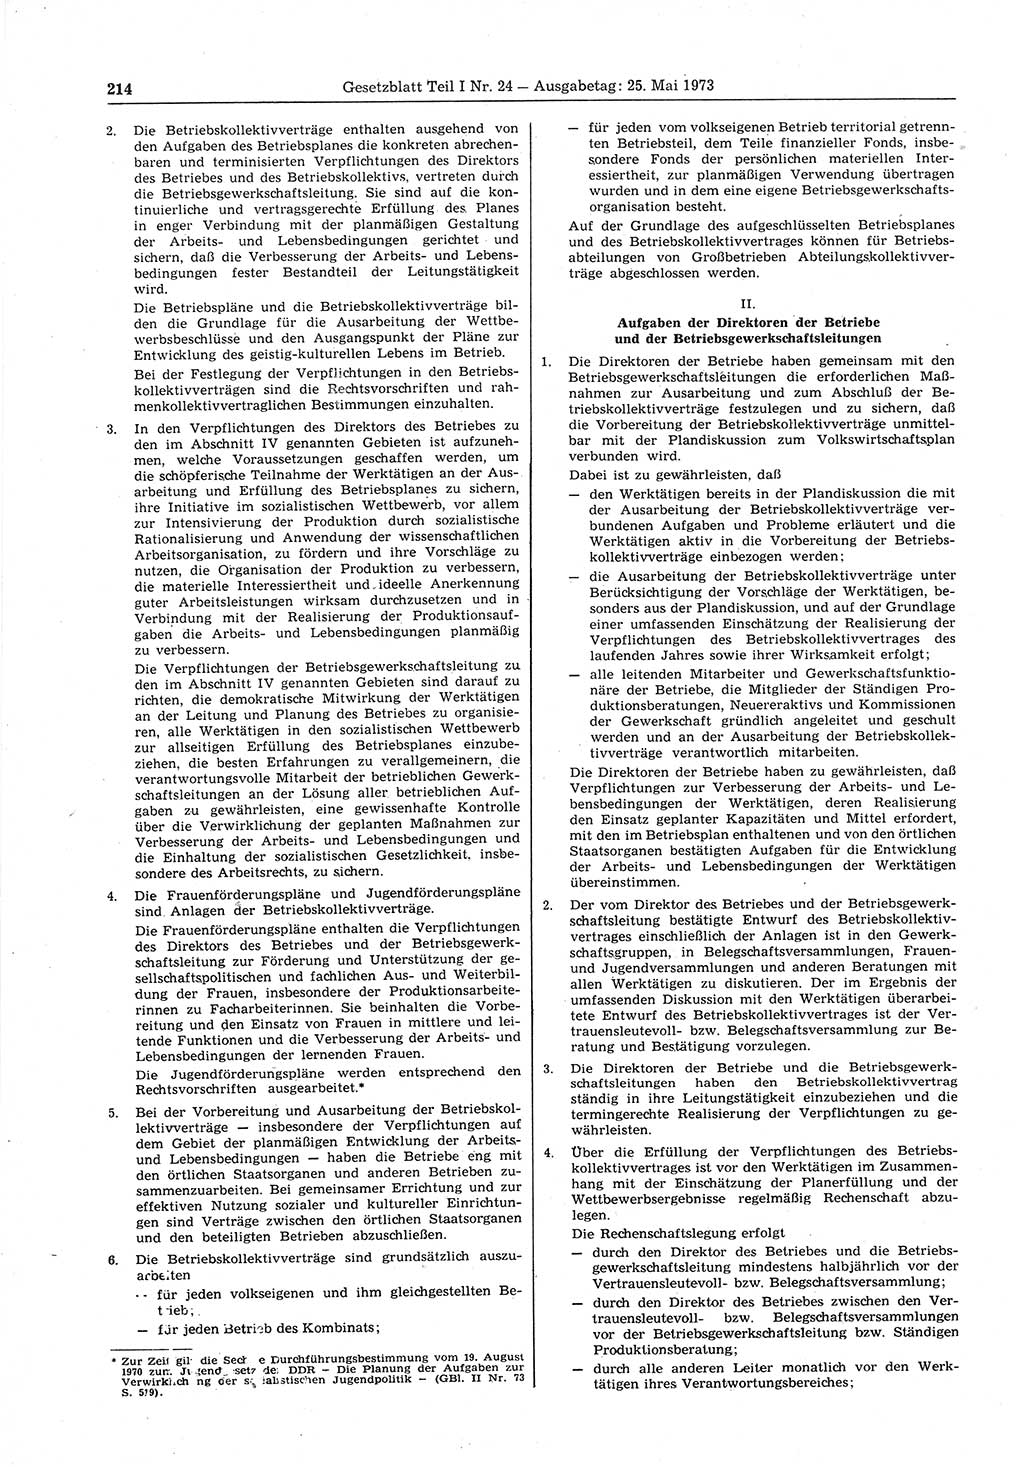 Gesetzblatt (GBl.) der Deutschen Demokratischen Republik (DDR) Teil Ⅰ 1973, Seite 214 (GBl. DDR Ⅰ 1973, S. 214)